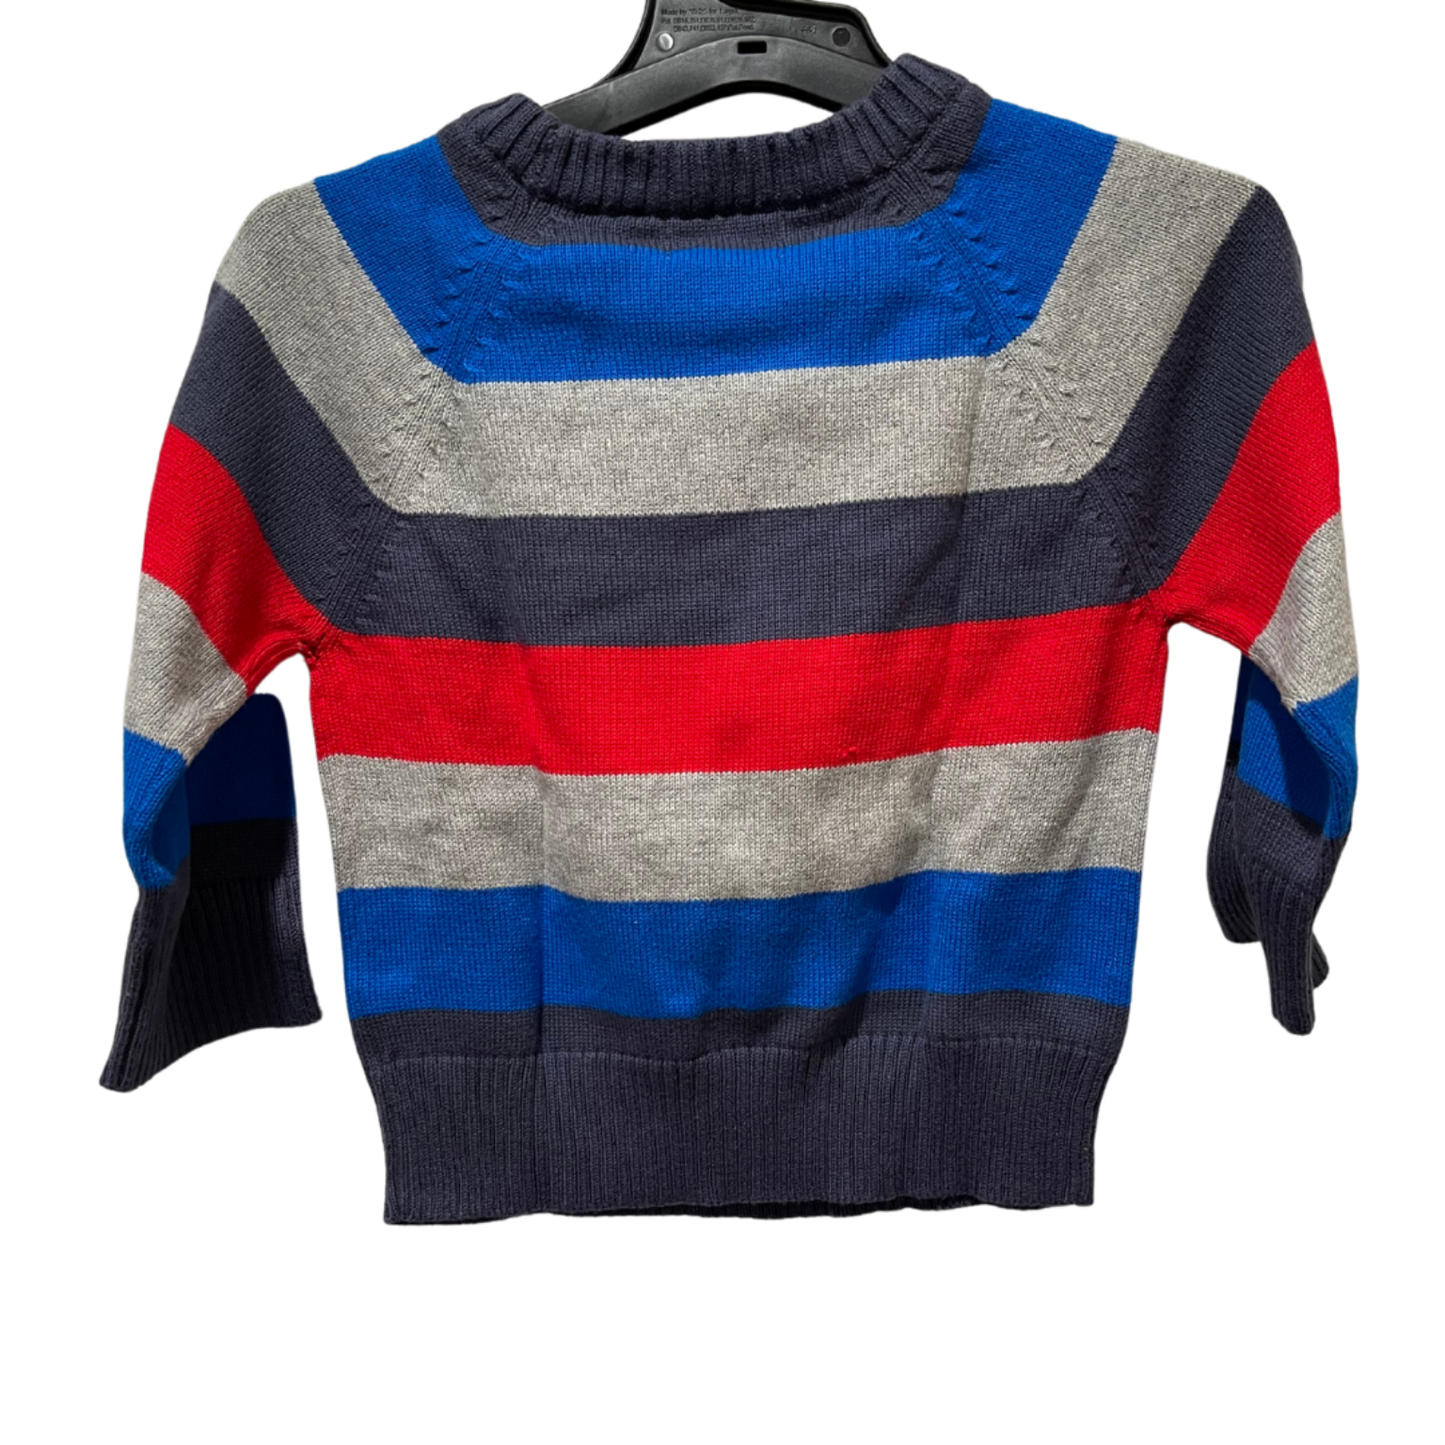 Cat & Jack Striped Car Sweater – 12M